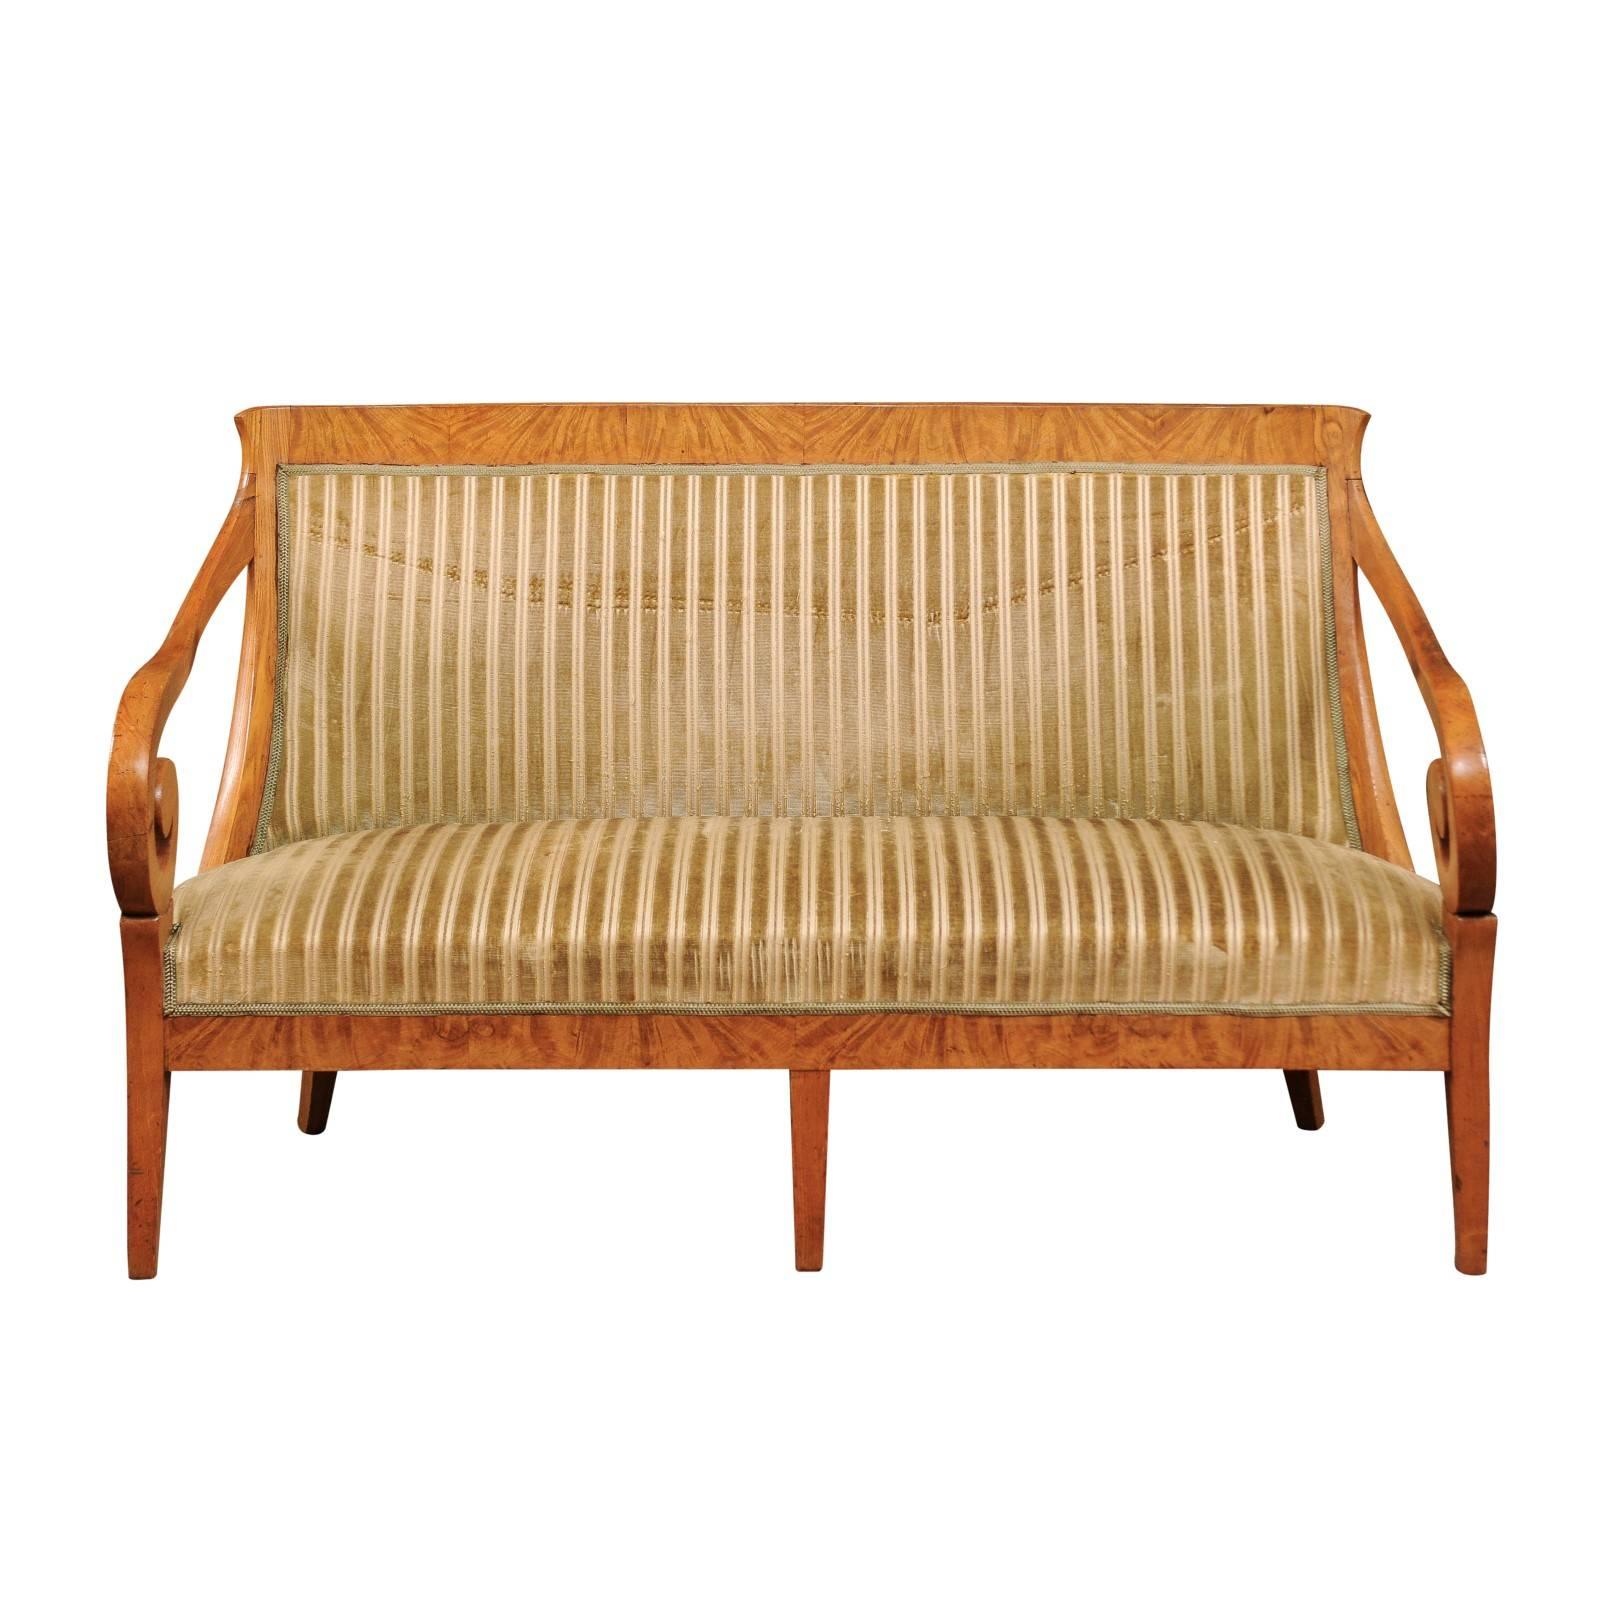 Biedermeier-Sessel aus dem frühen 19. Jahrhundert mit Schnörkelarmen und geschwungenem Rücken aus Birkenholz